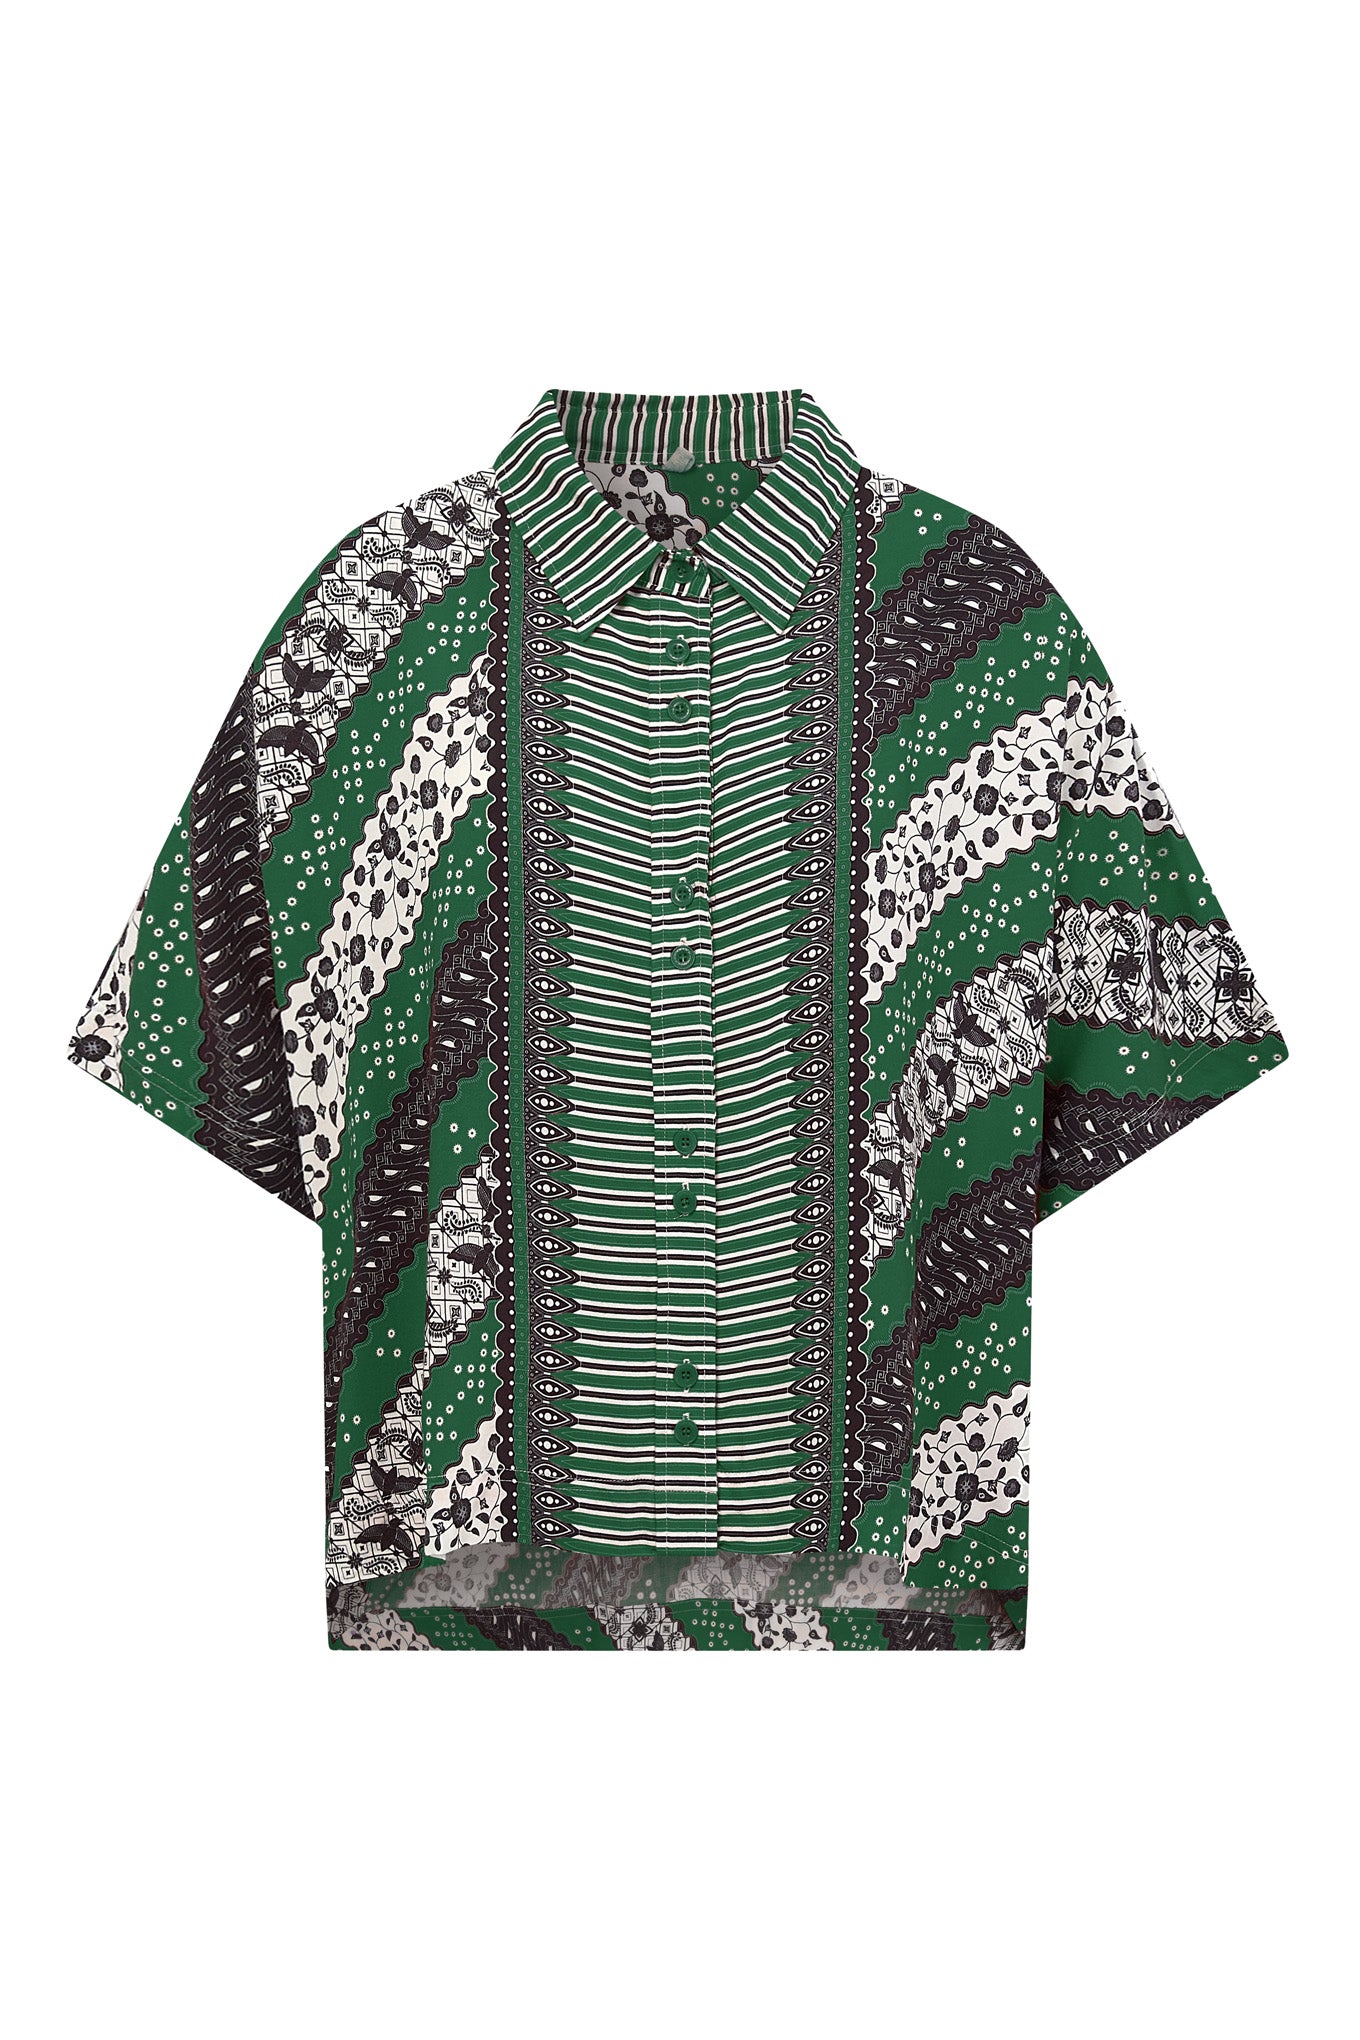 KIMONO Shirt - Summer Green